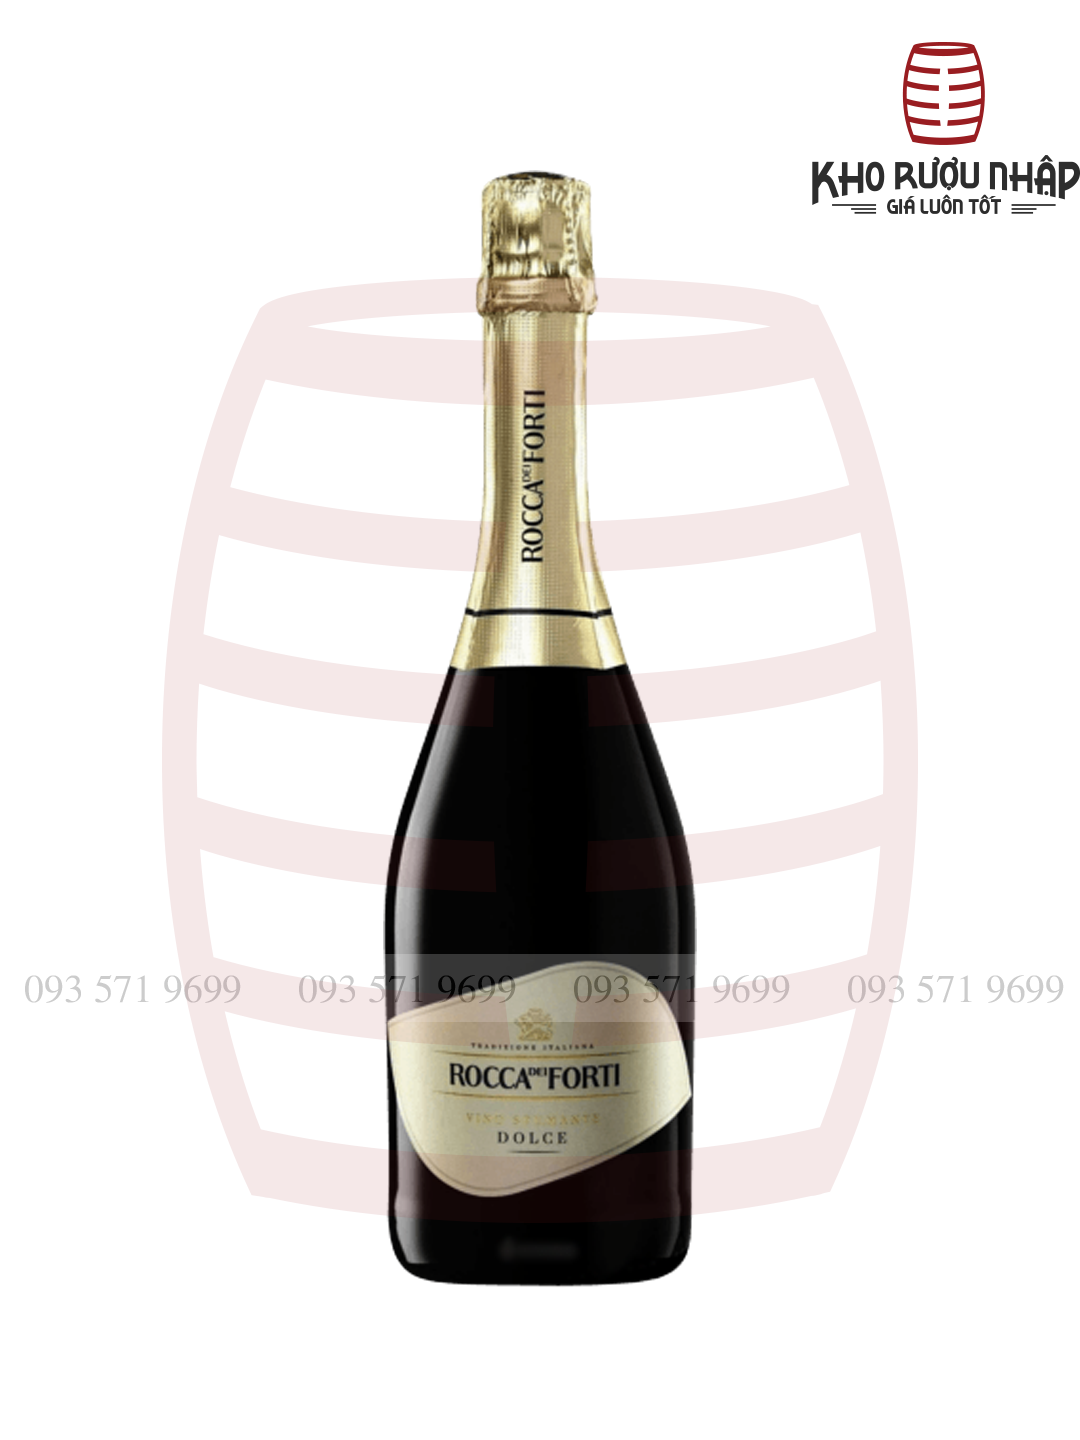 Rượu vang nổ Rocca dei forti Dolce trắng ngọt mã HP-275 thượng hạng